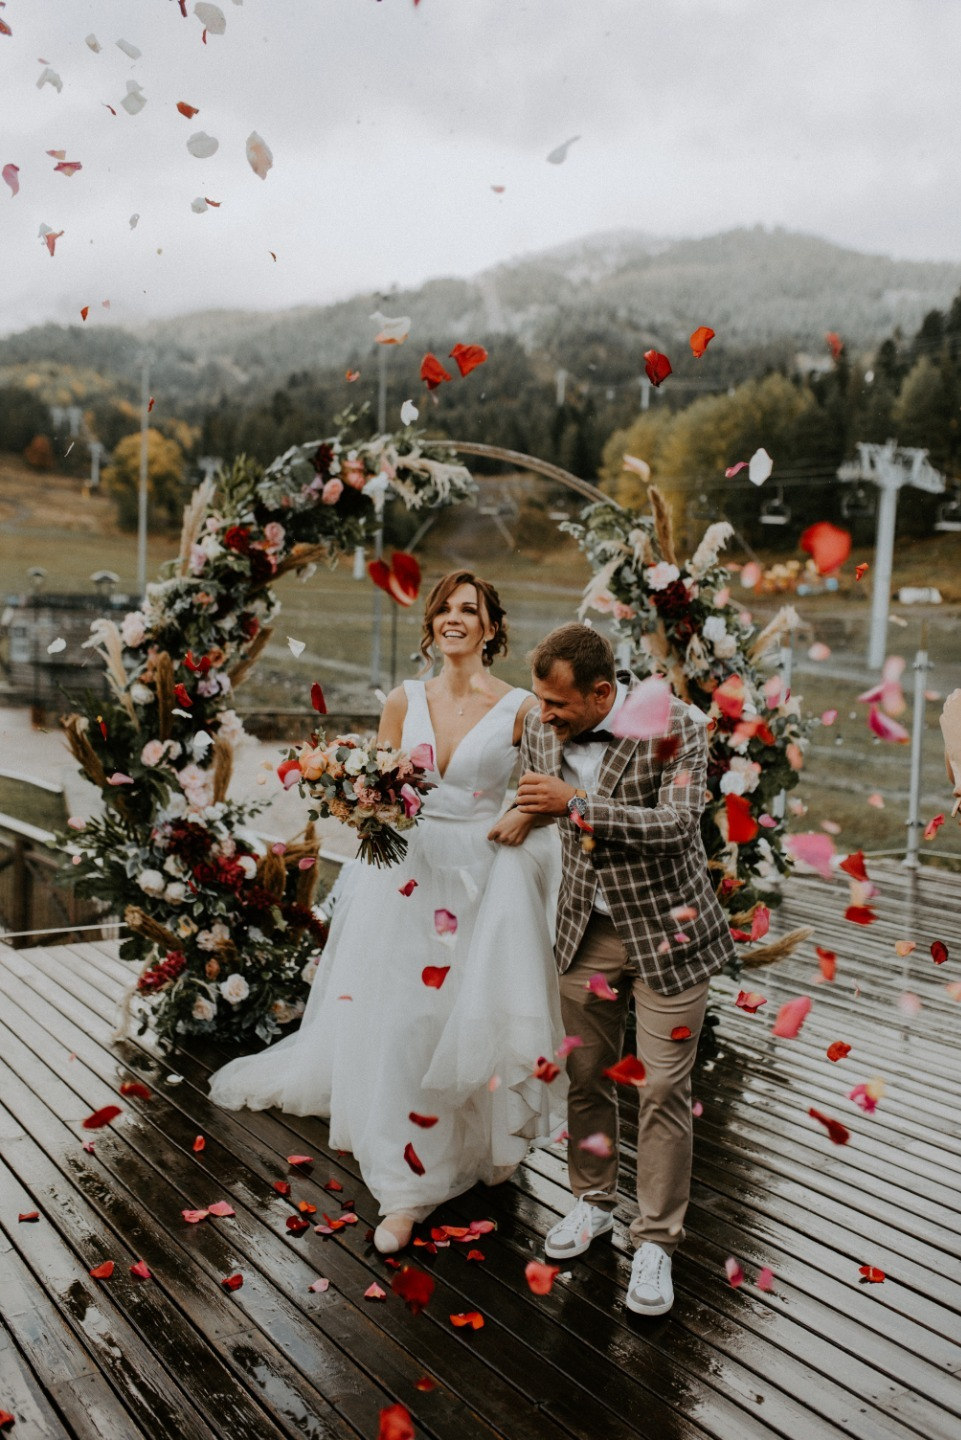 ФОТО ИЗ СТАТЬИ: Осень в горах: атмосферная свадьба в Архызе